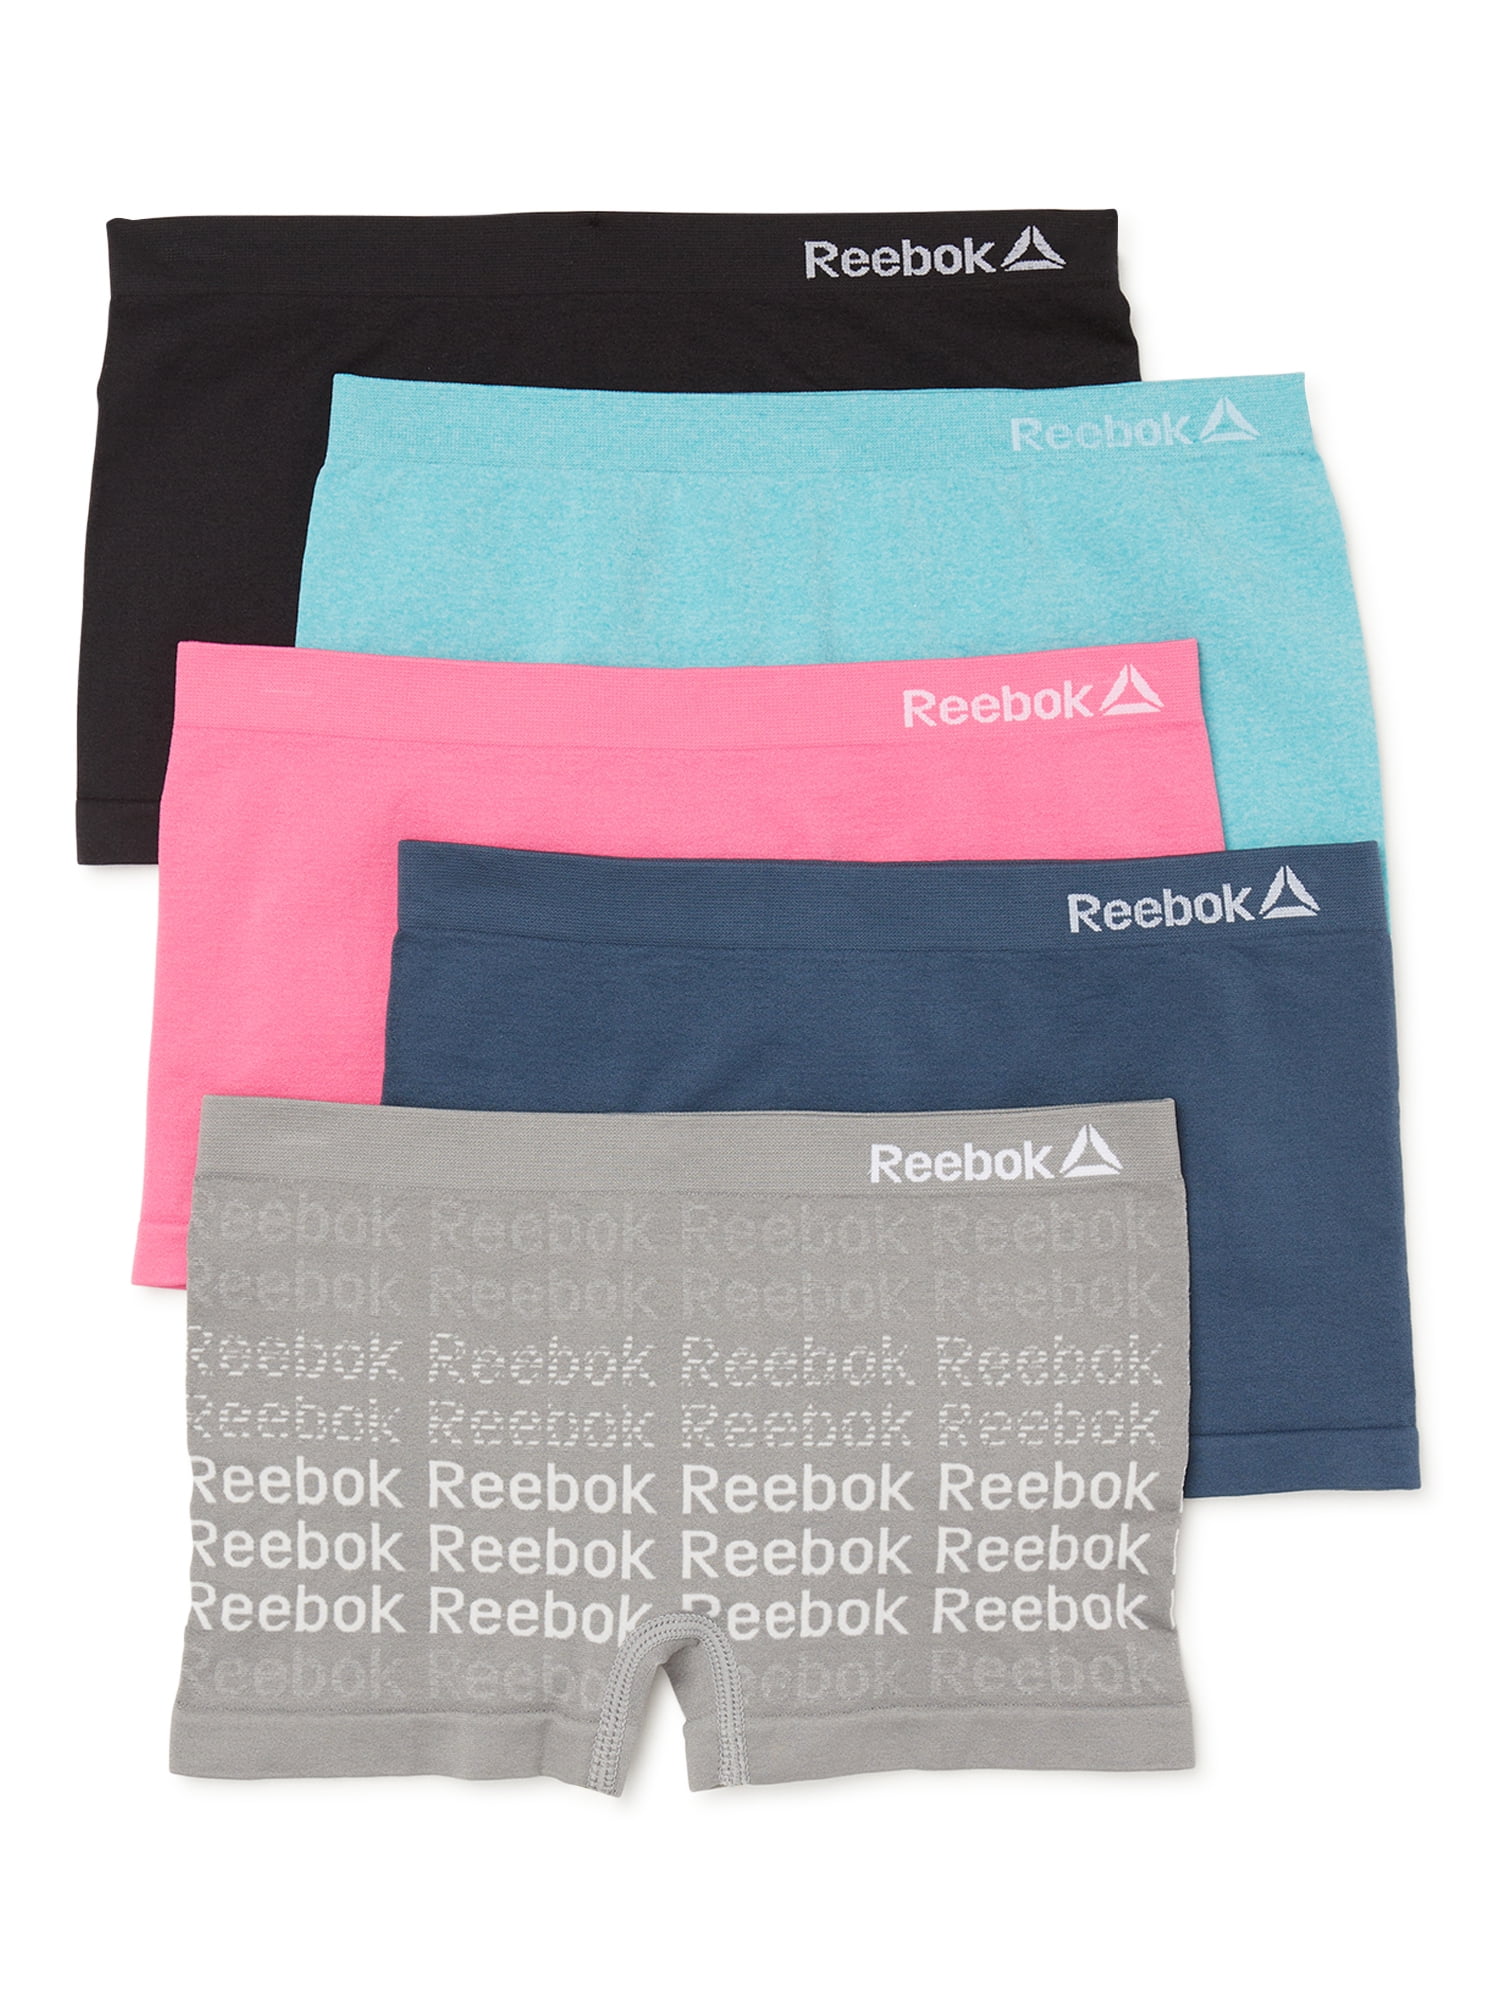 Reebok Girls Seamless Boyshort Panties, 5-Pack